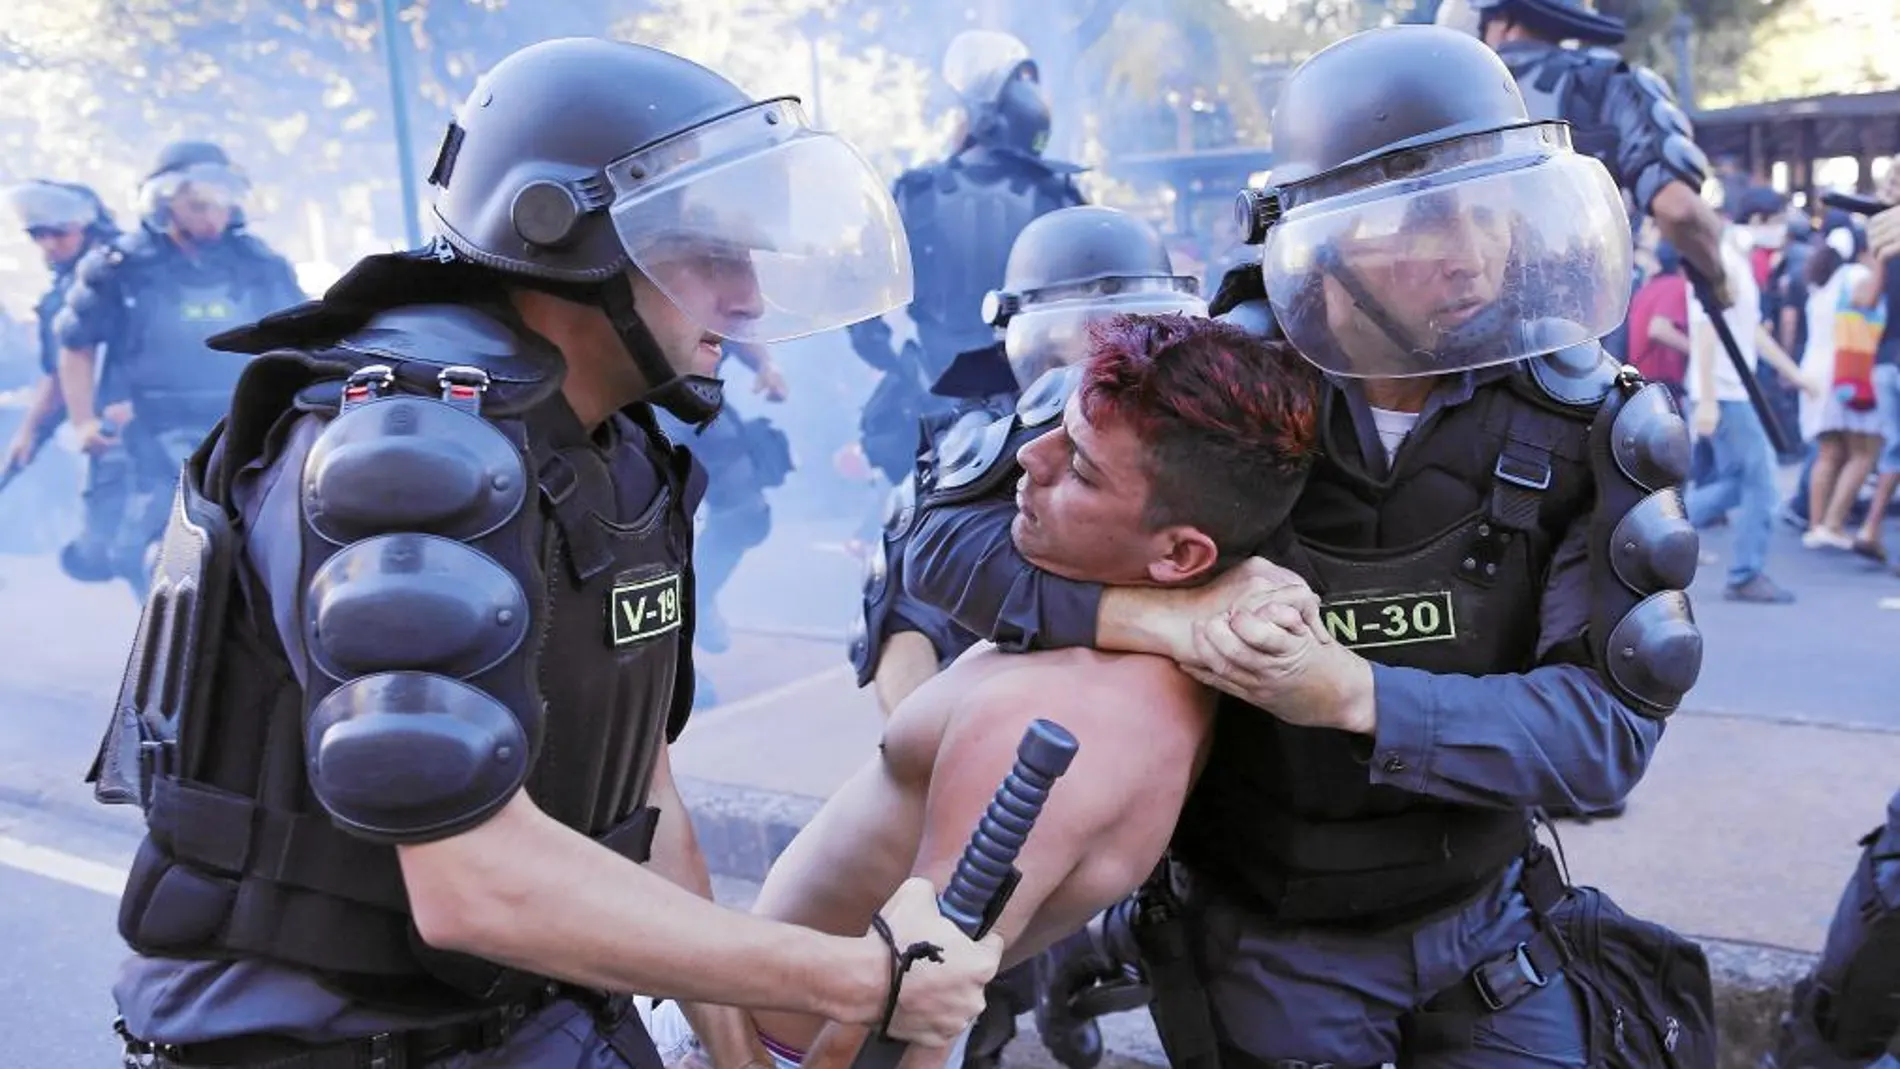 La Policía fue contundente a la hora de responder a los que protestaban contra la Copa del Mundo